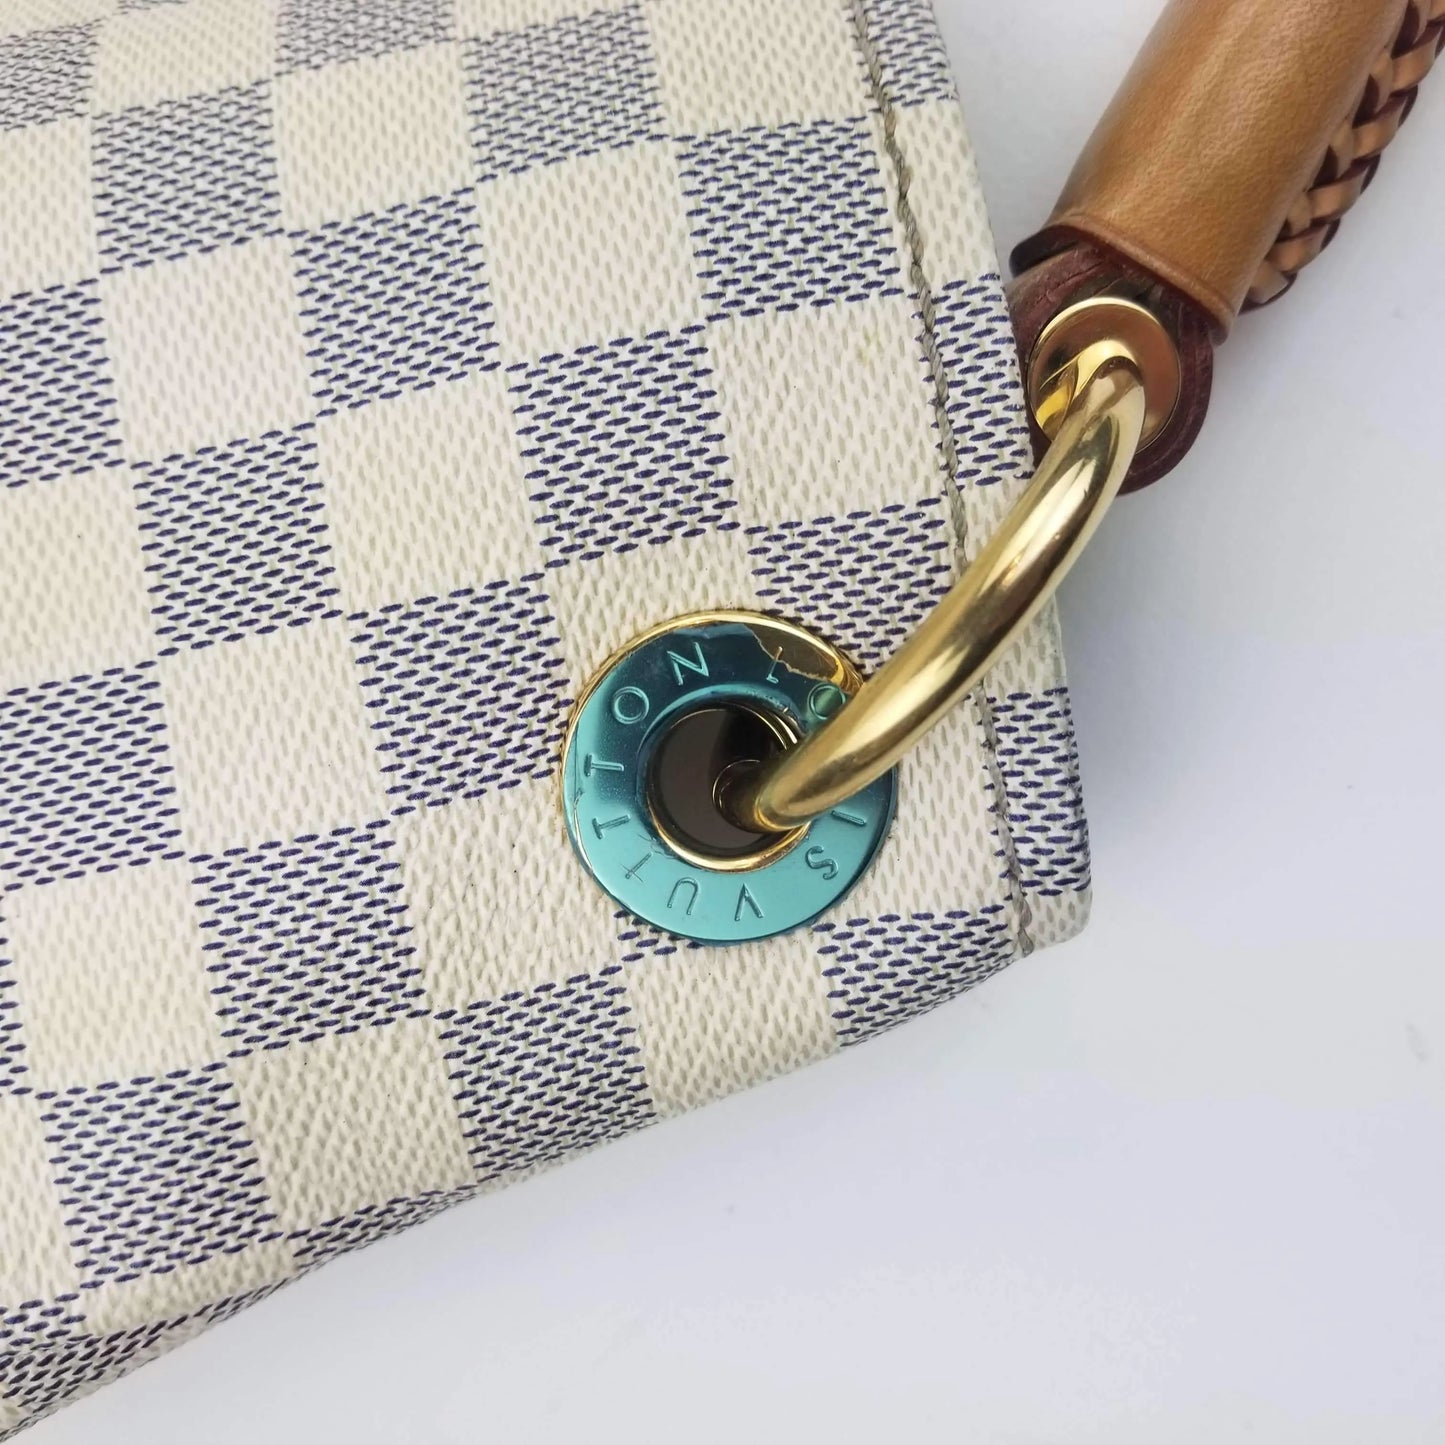 Louis Vuitton - Artsy mm - DaiMer Azur Shoulder Bag